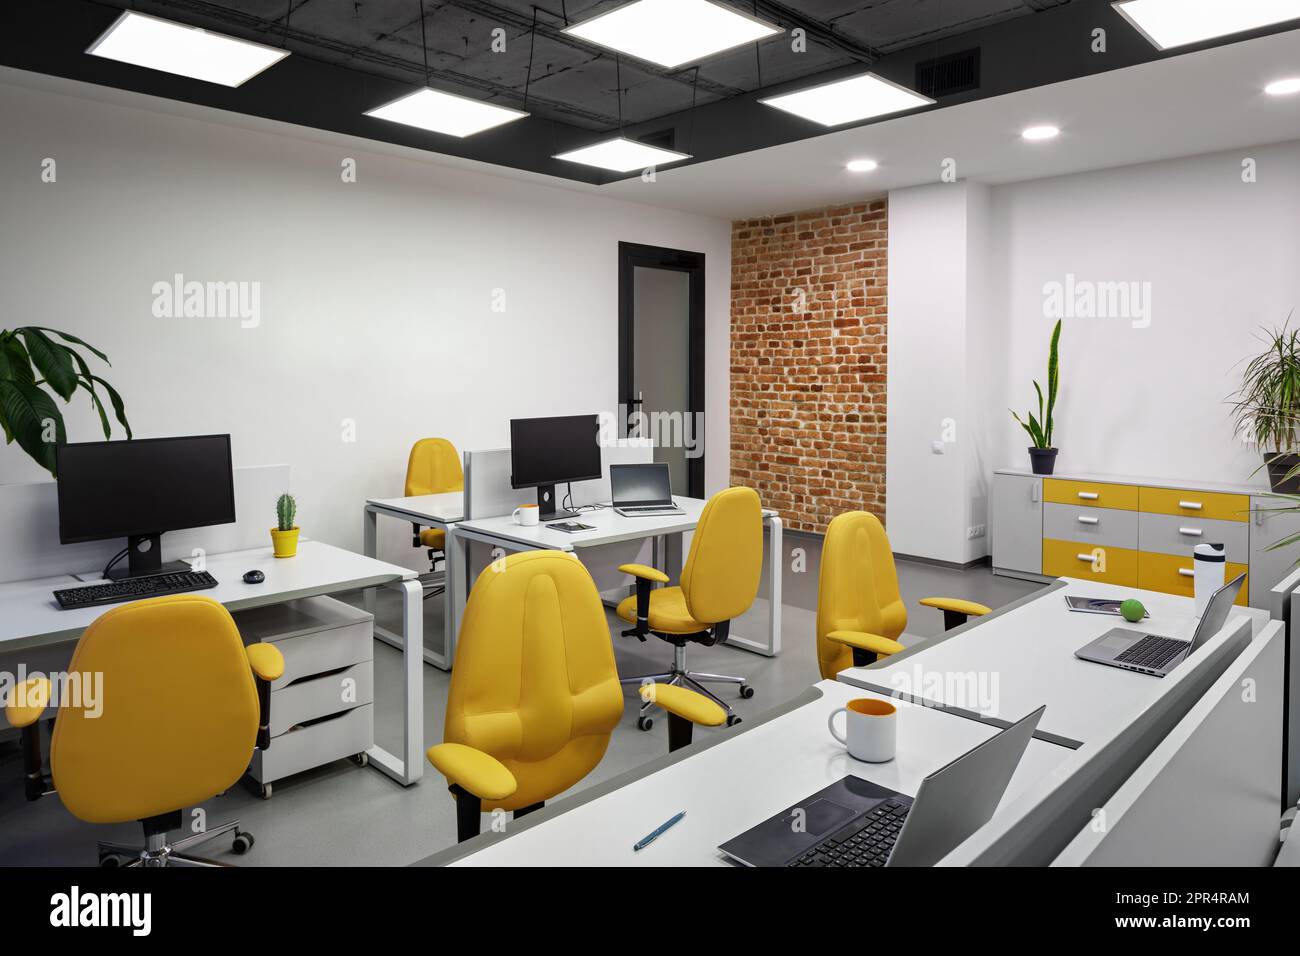 Ufficio IT con postazioni di lavoro per sviluppatori di dipendenti con sedie gialle e computer. Foto Stock